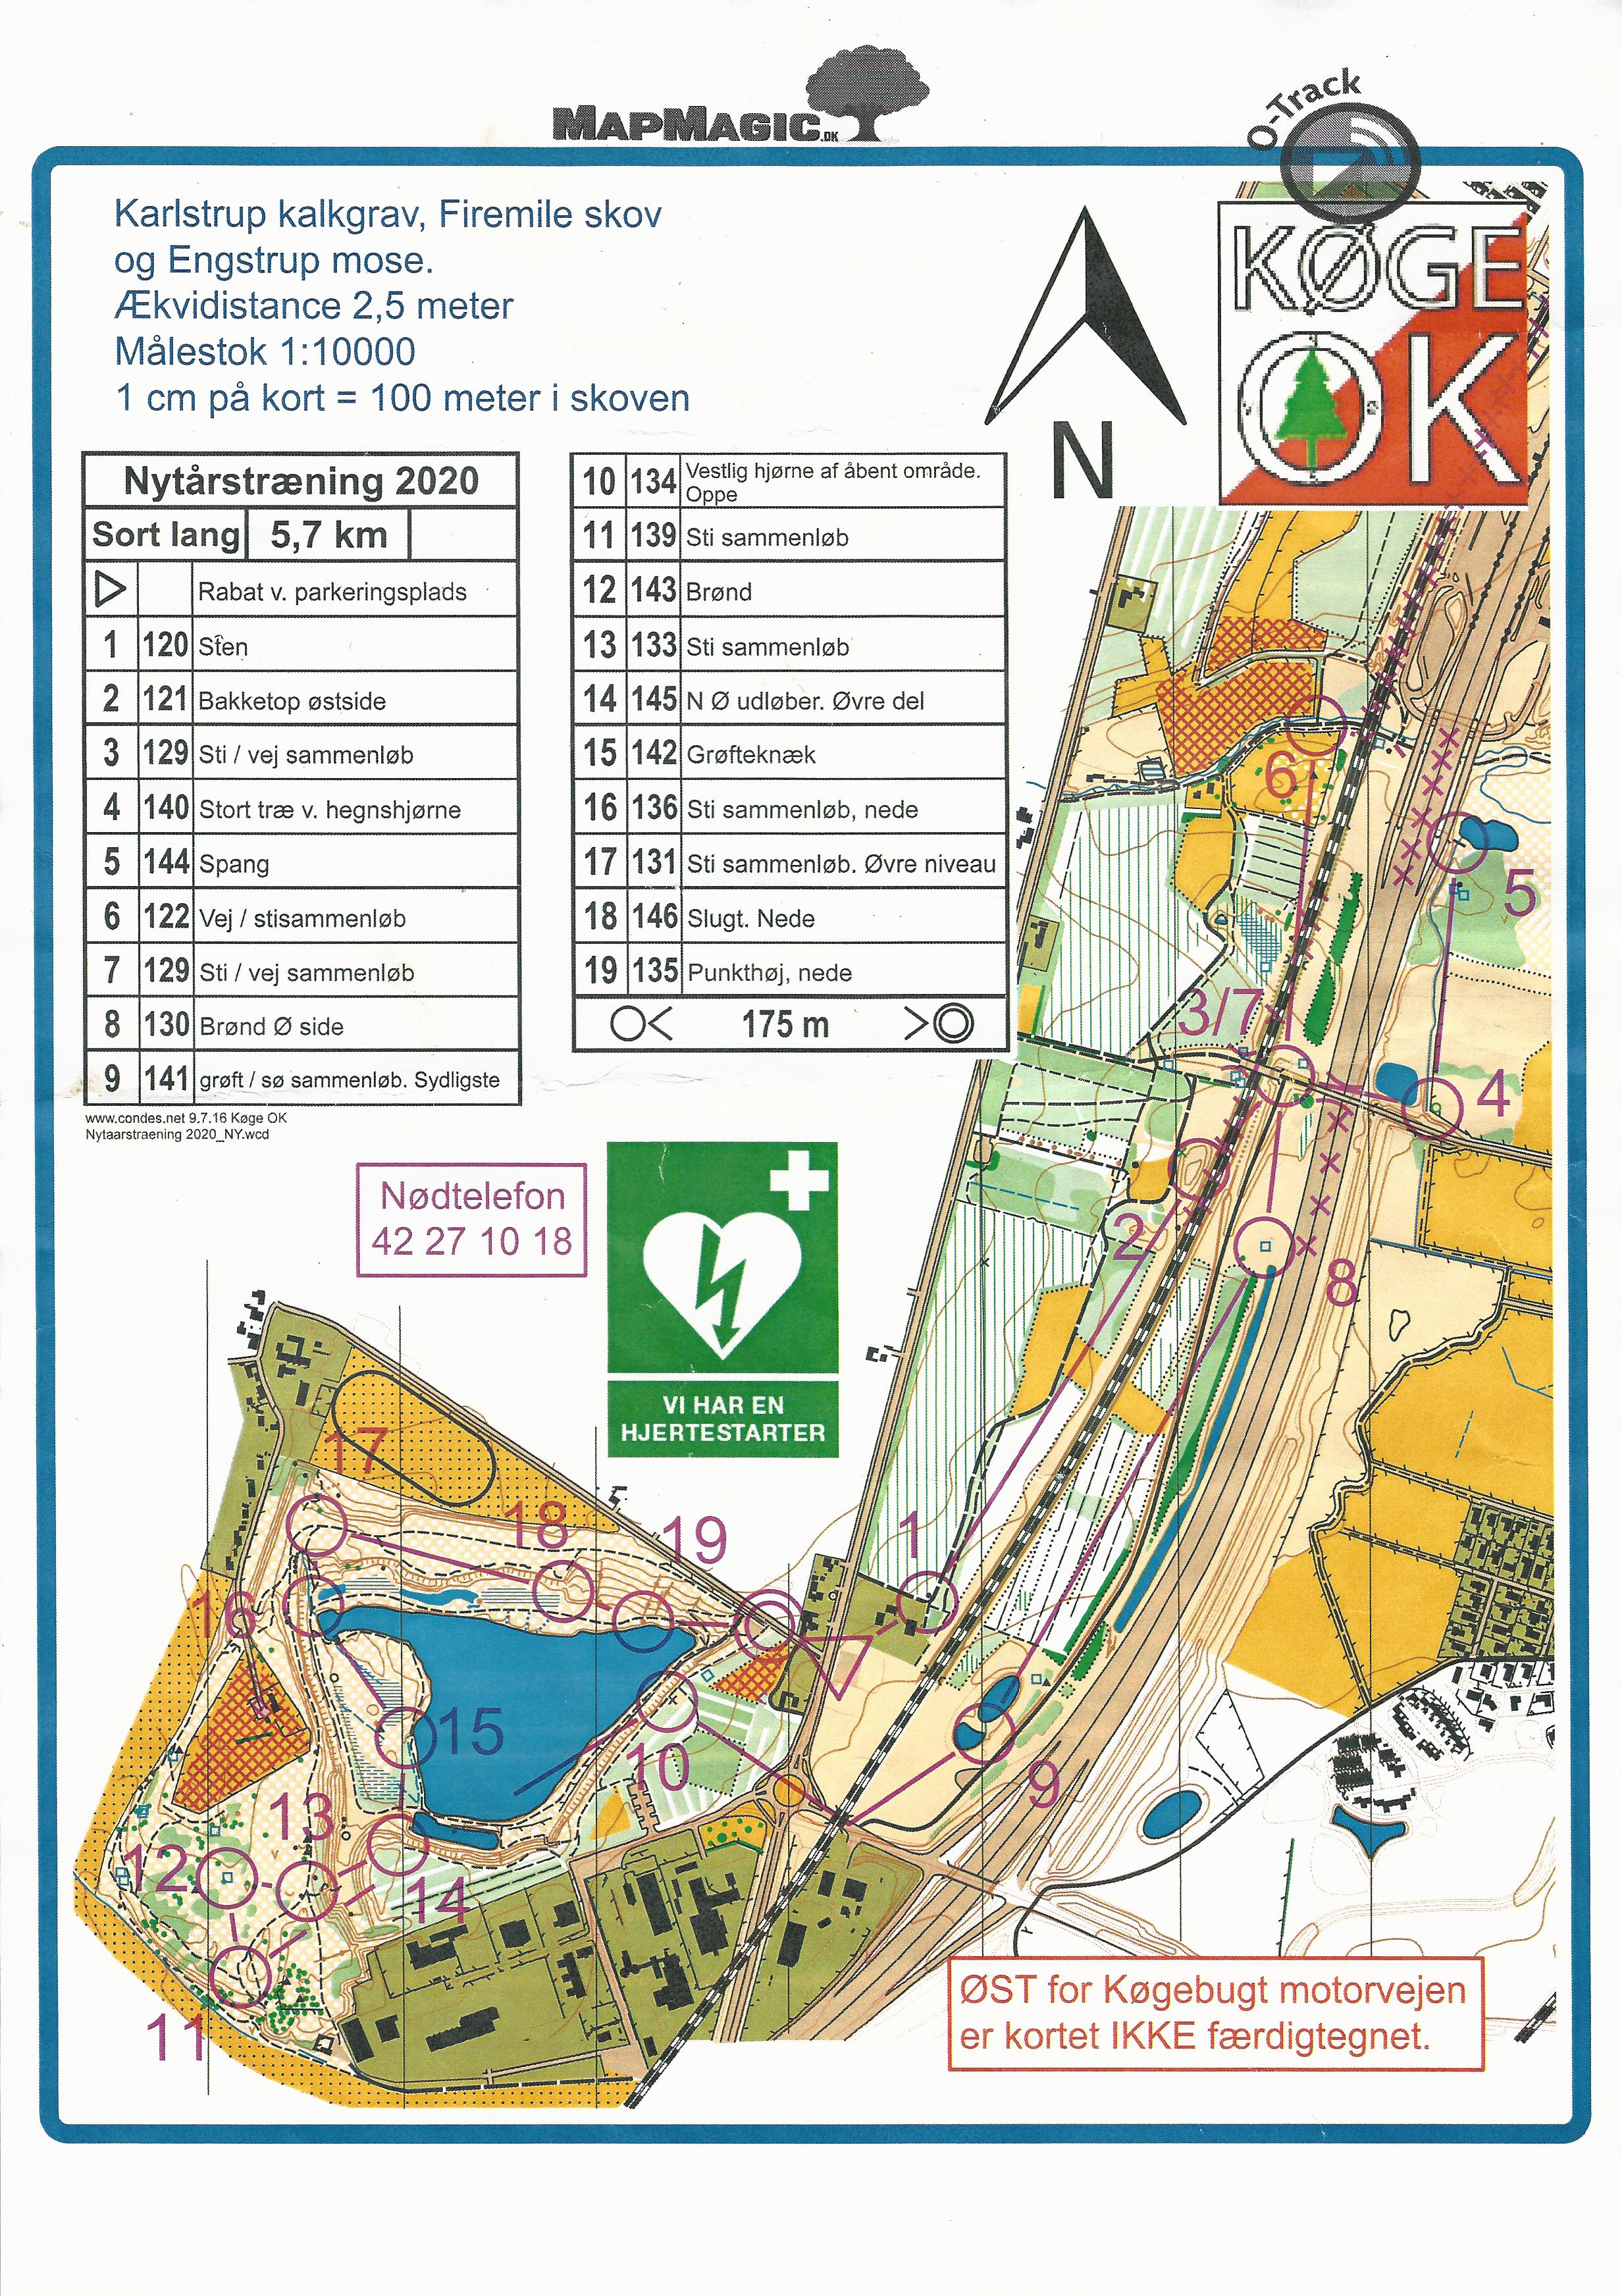 Nytårstræningsløb, Karlstrup Kalkgrav, Sort Lang (05/01/2020)